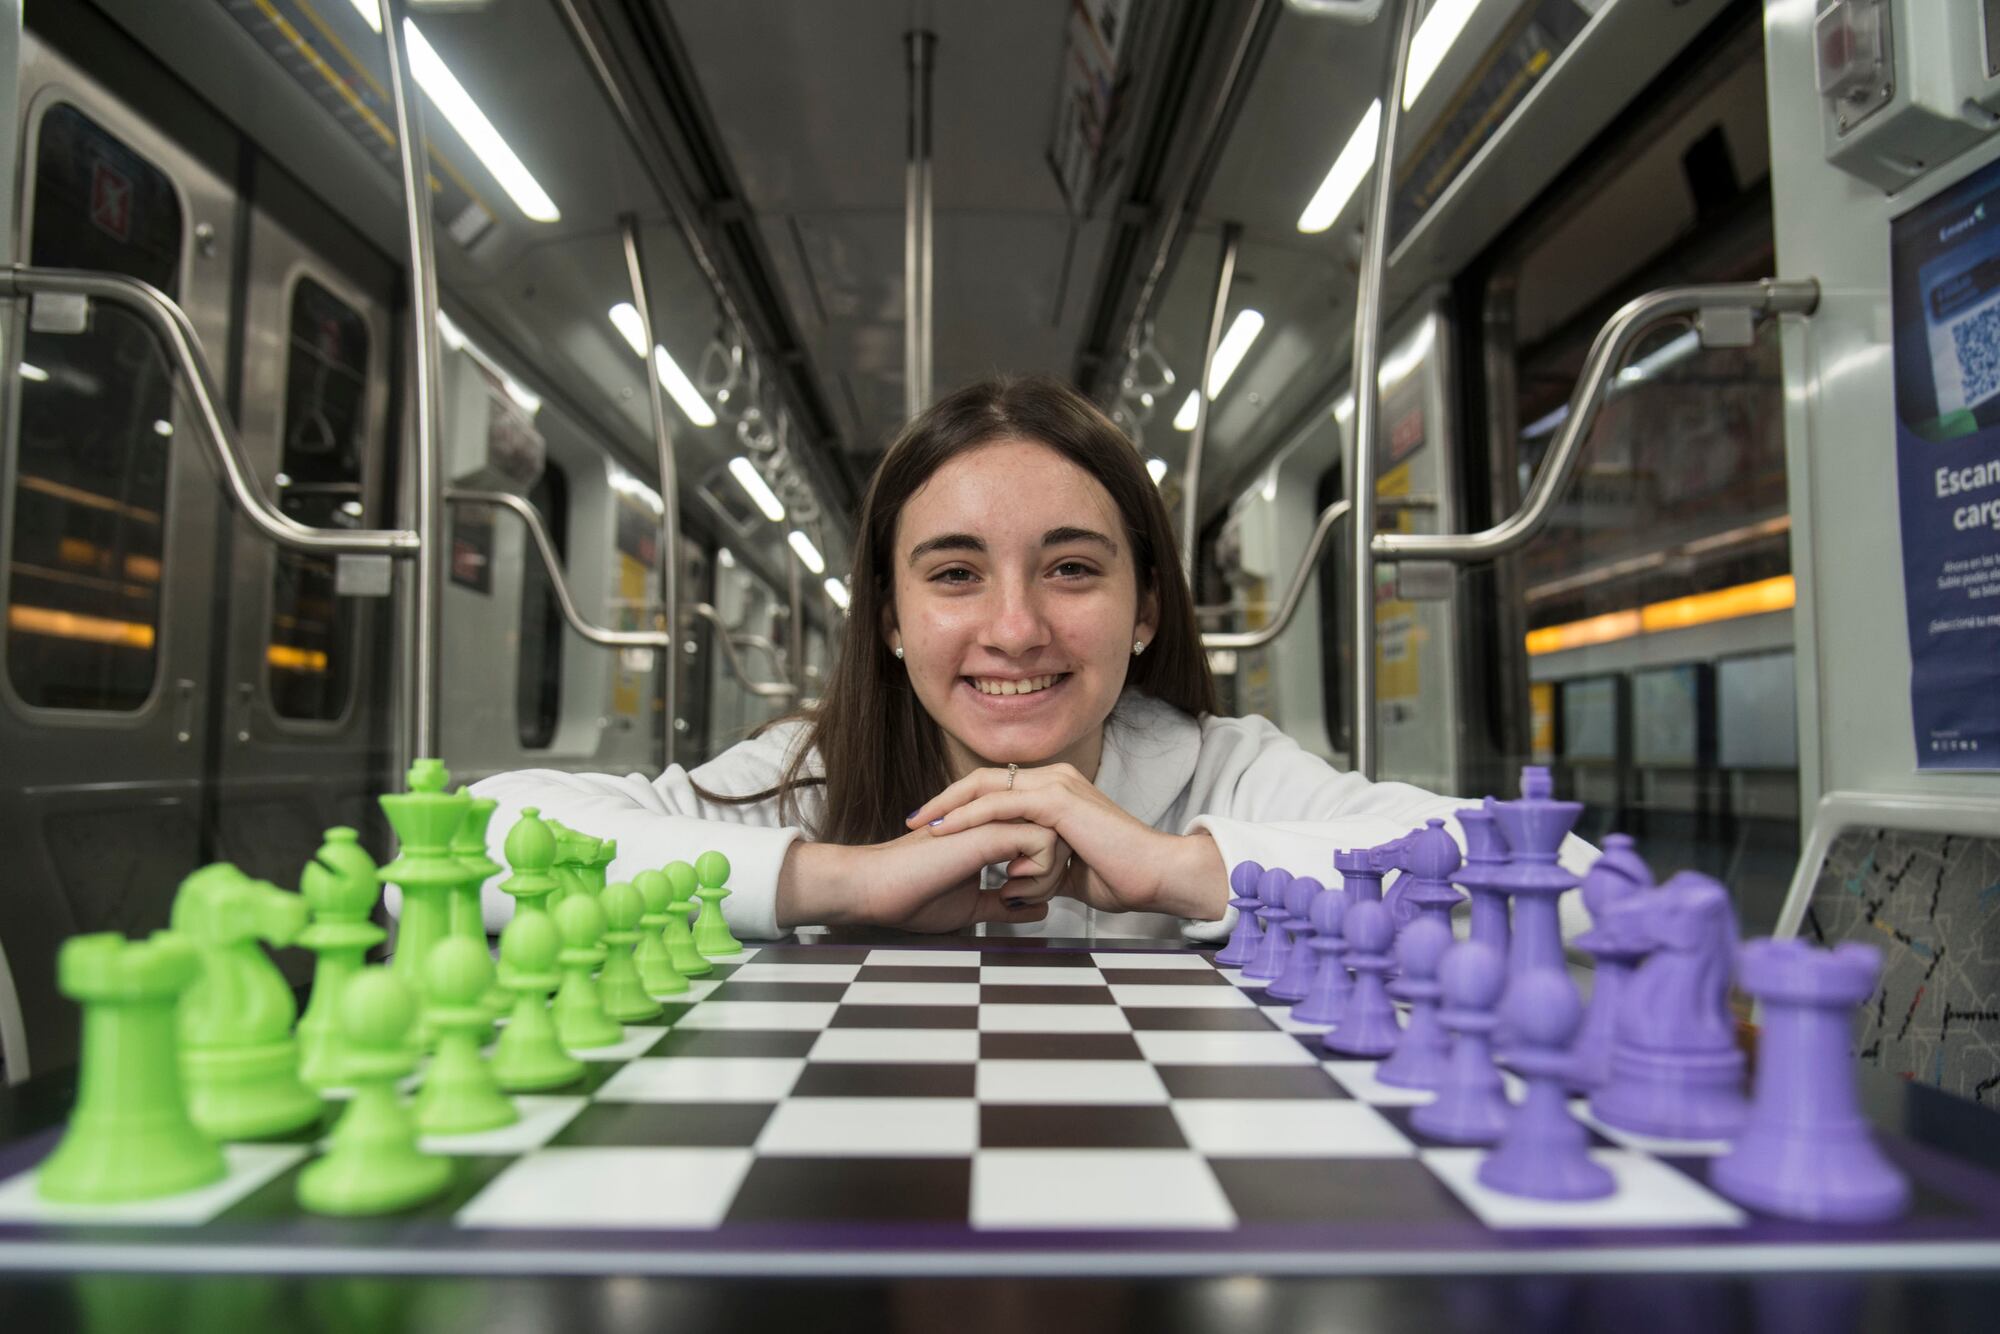 El 10 de mayo, Candela llevará su talento para el ajedrez al subte